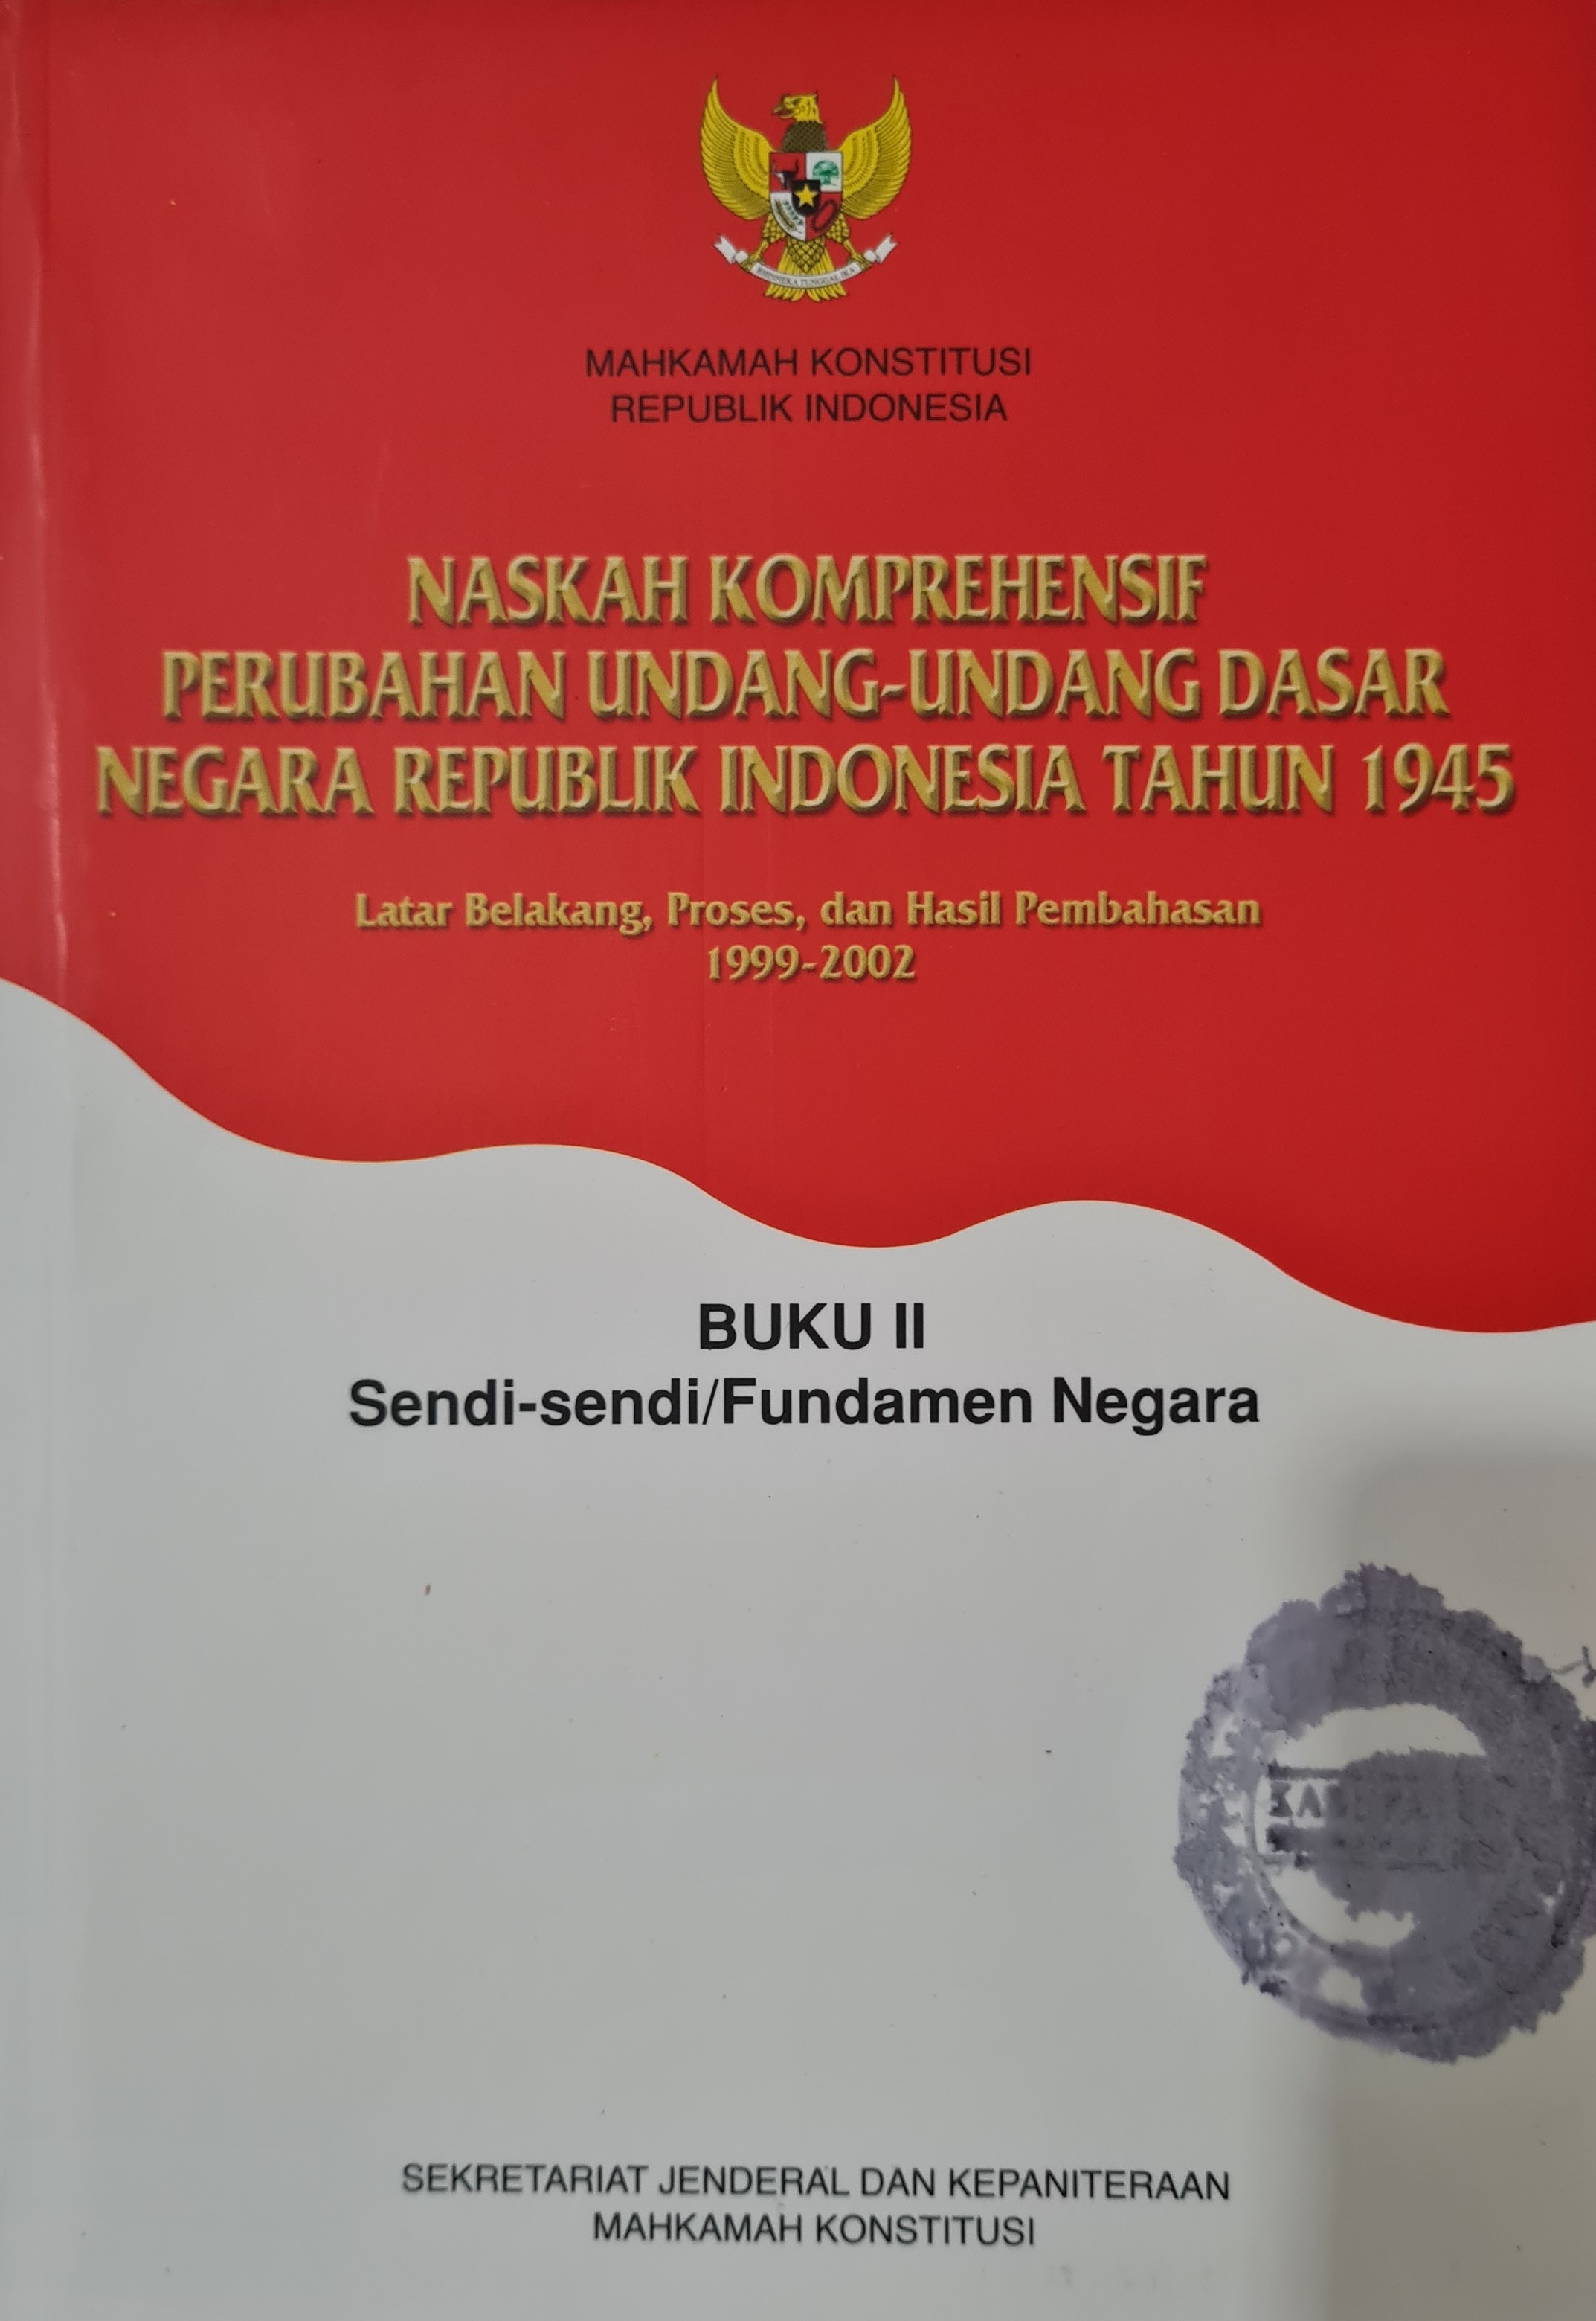 Naskah Komprehensif Perubahan Undang-Undang Dasar Negara Republik Indonesia Tahun 1945 Buku II Sendi-sendi/Fundamen Negara